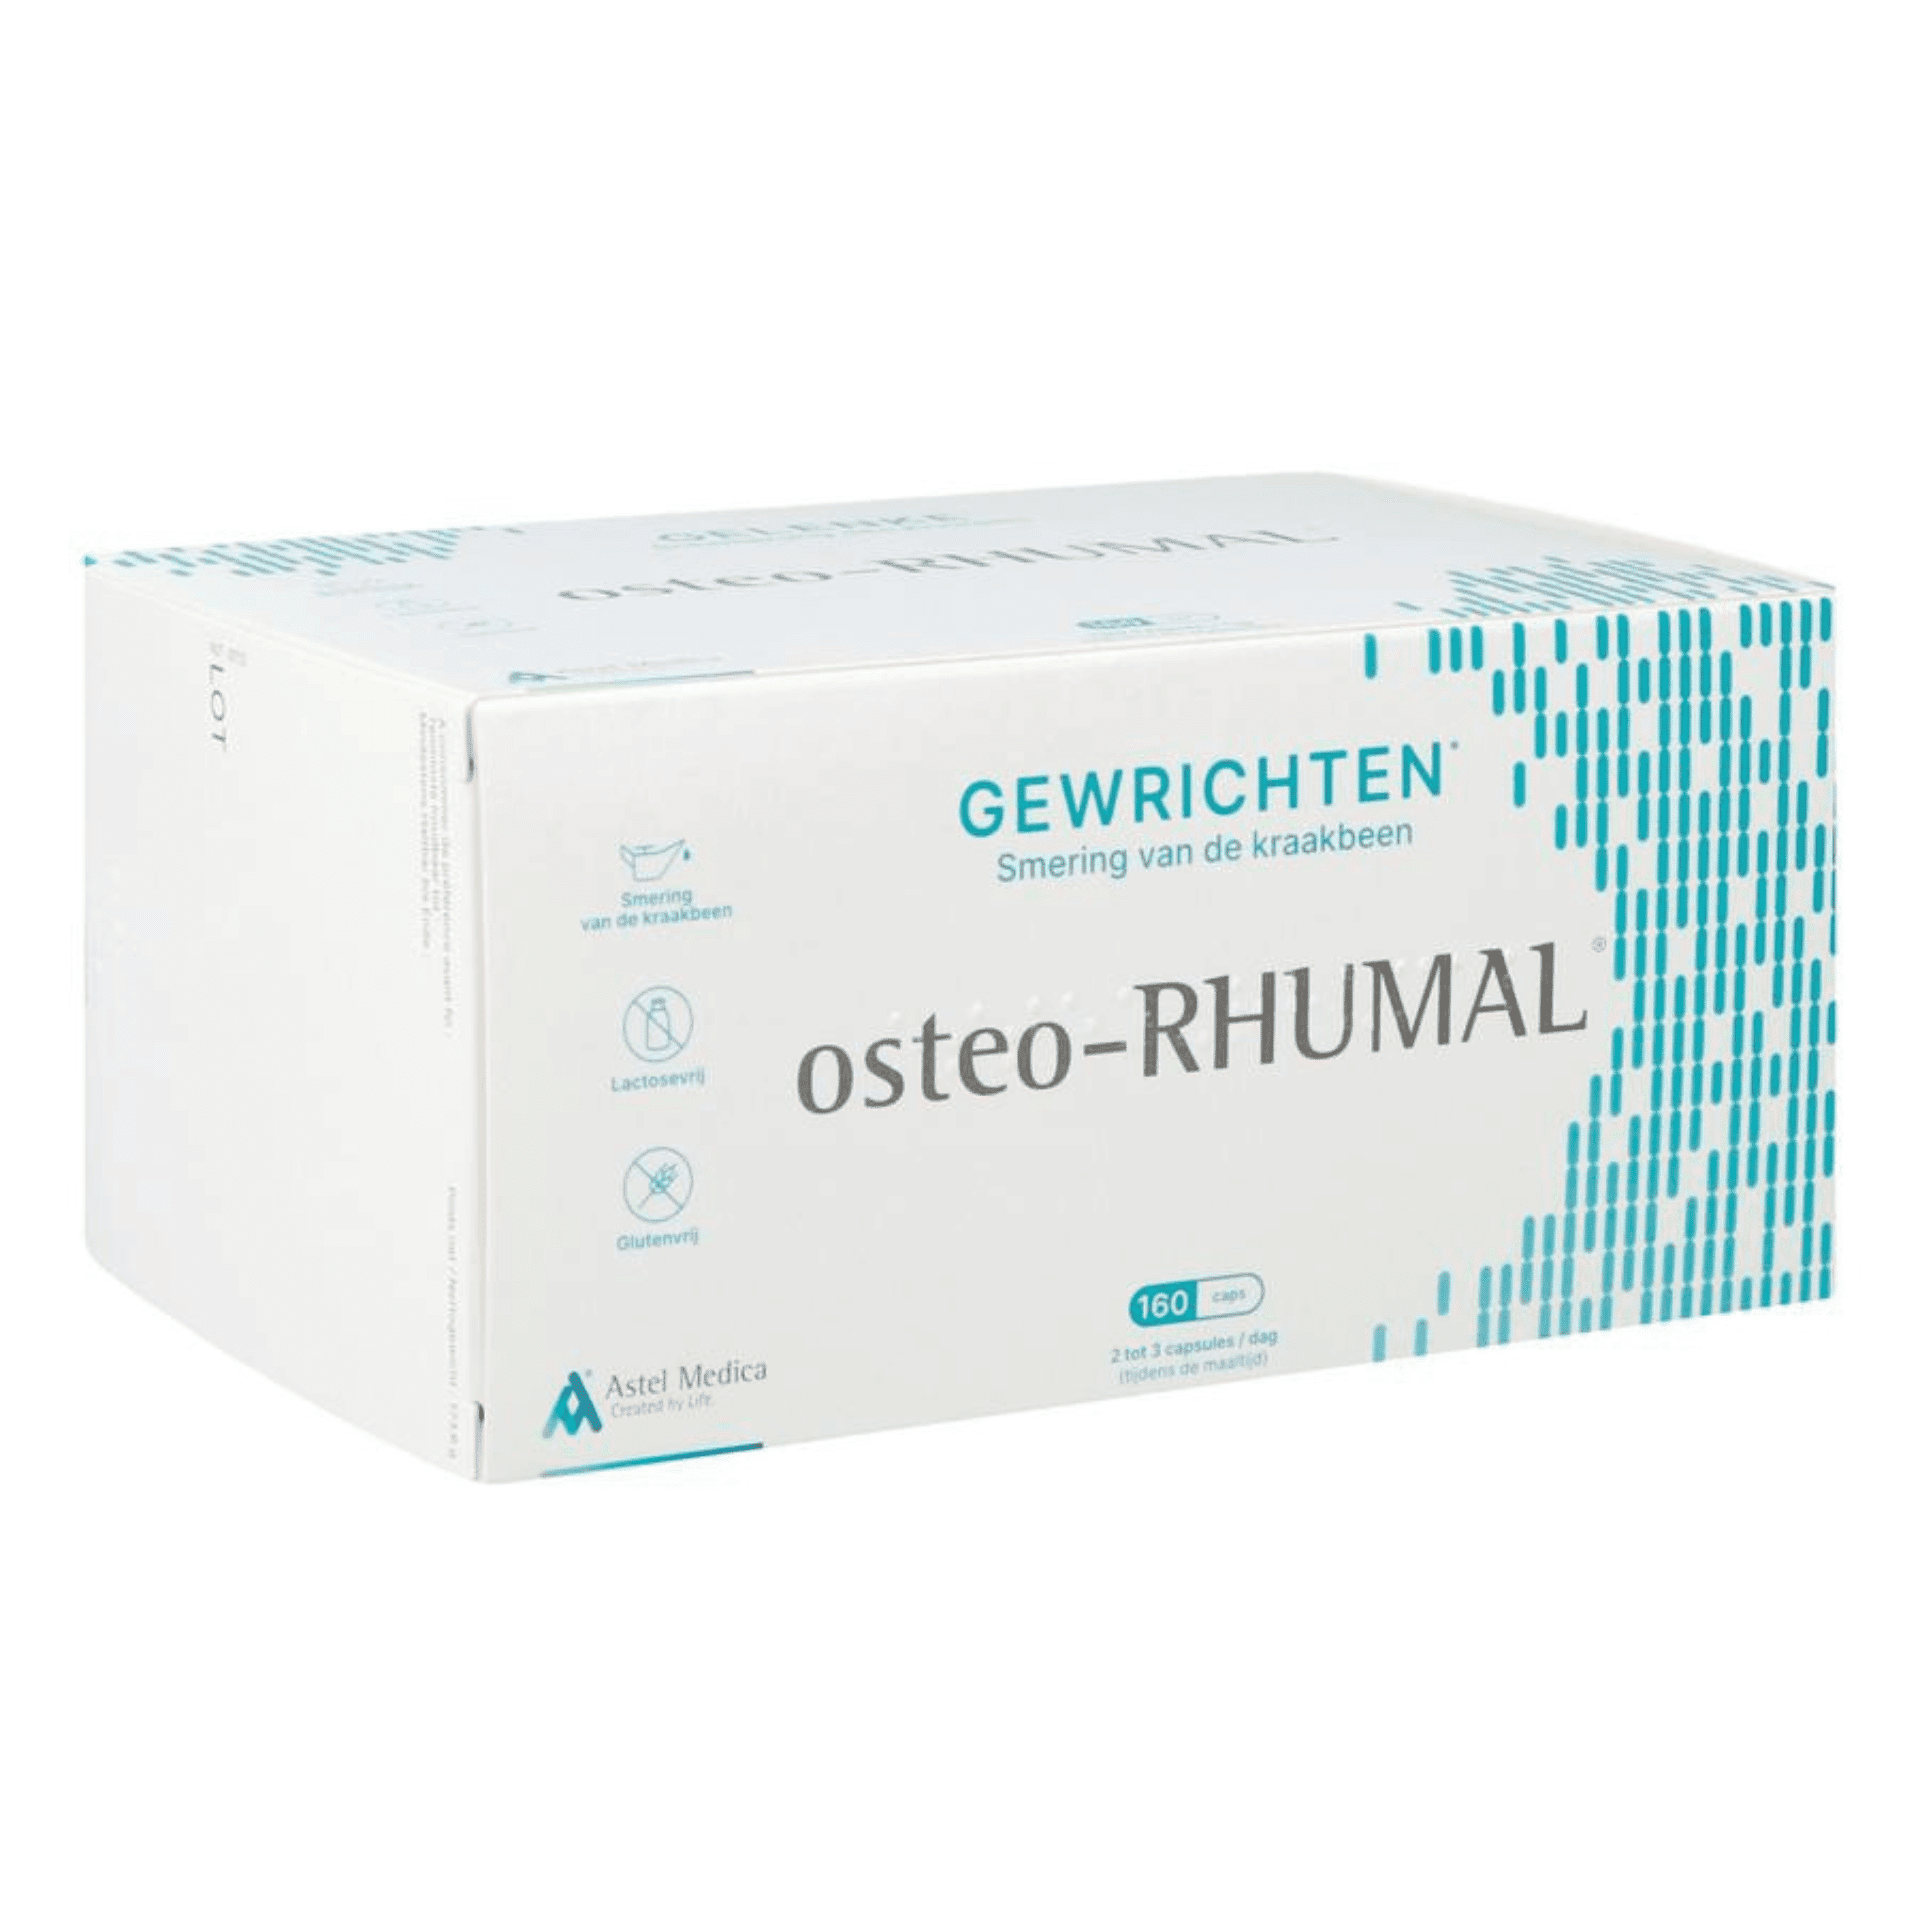 Osteo-Rhumal